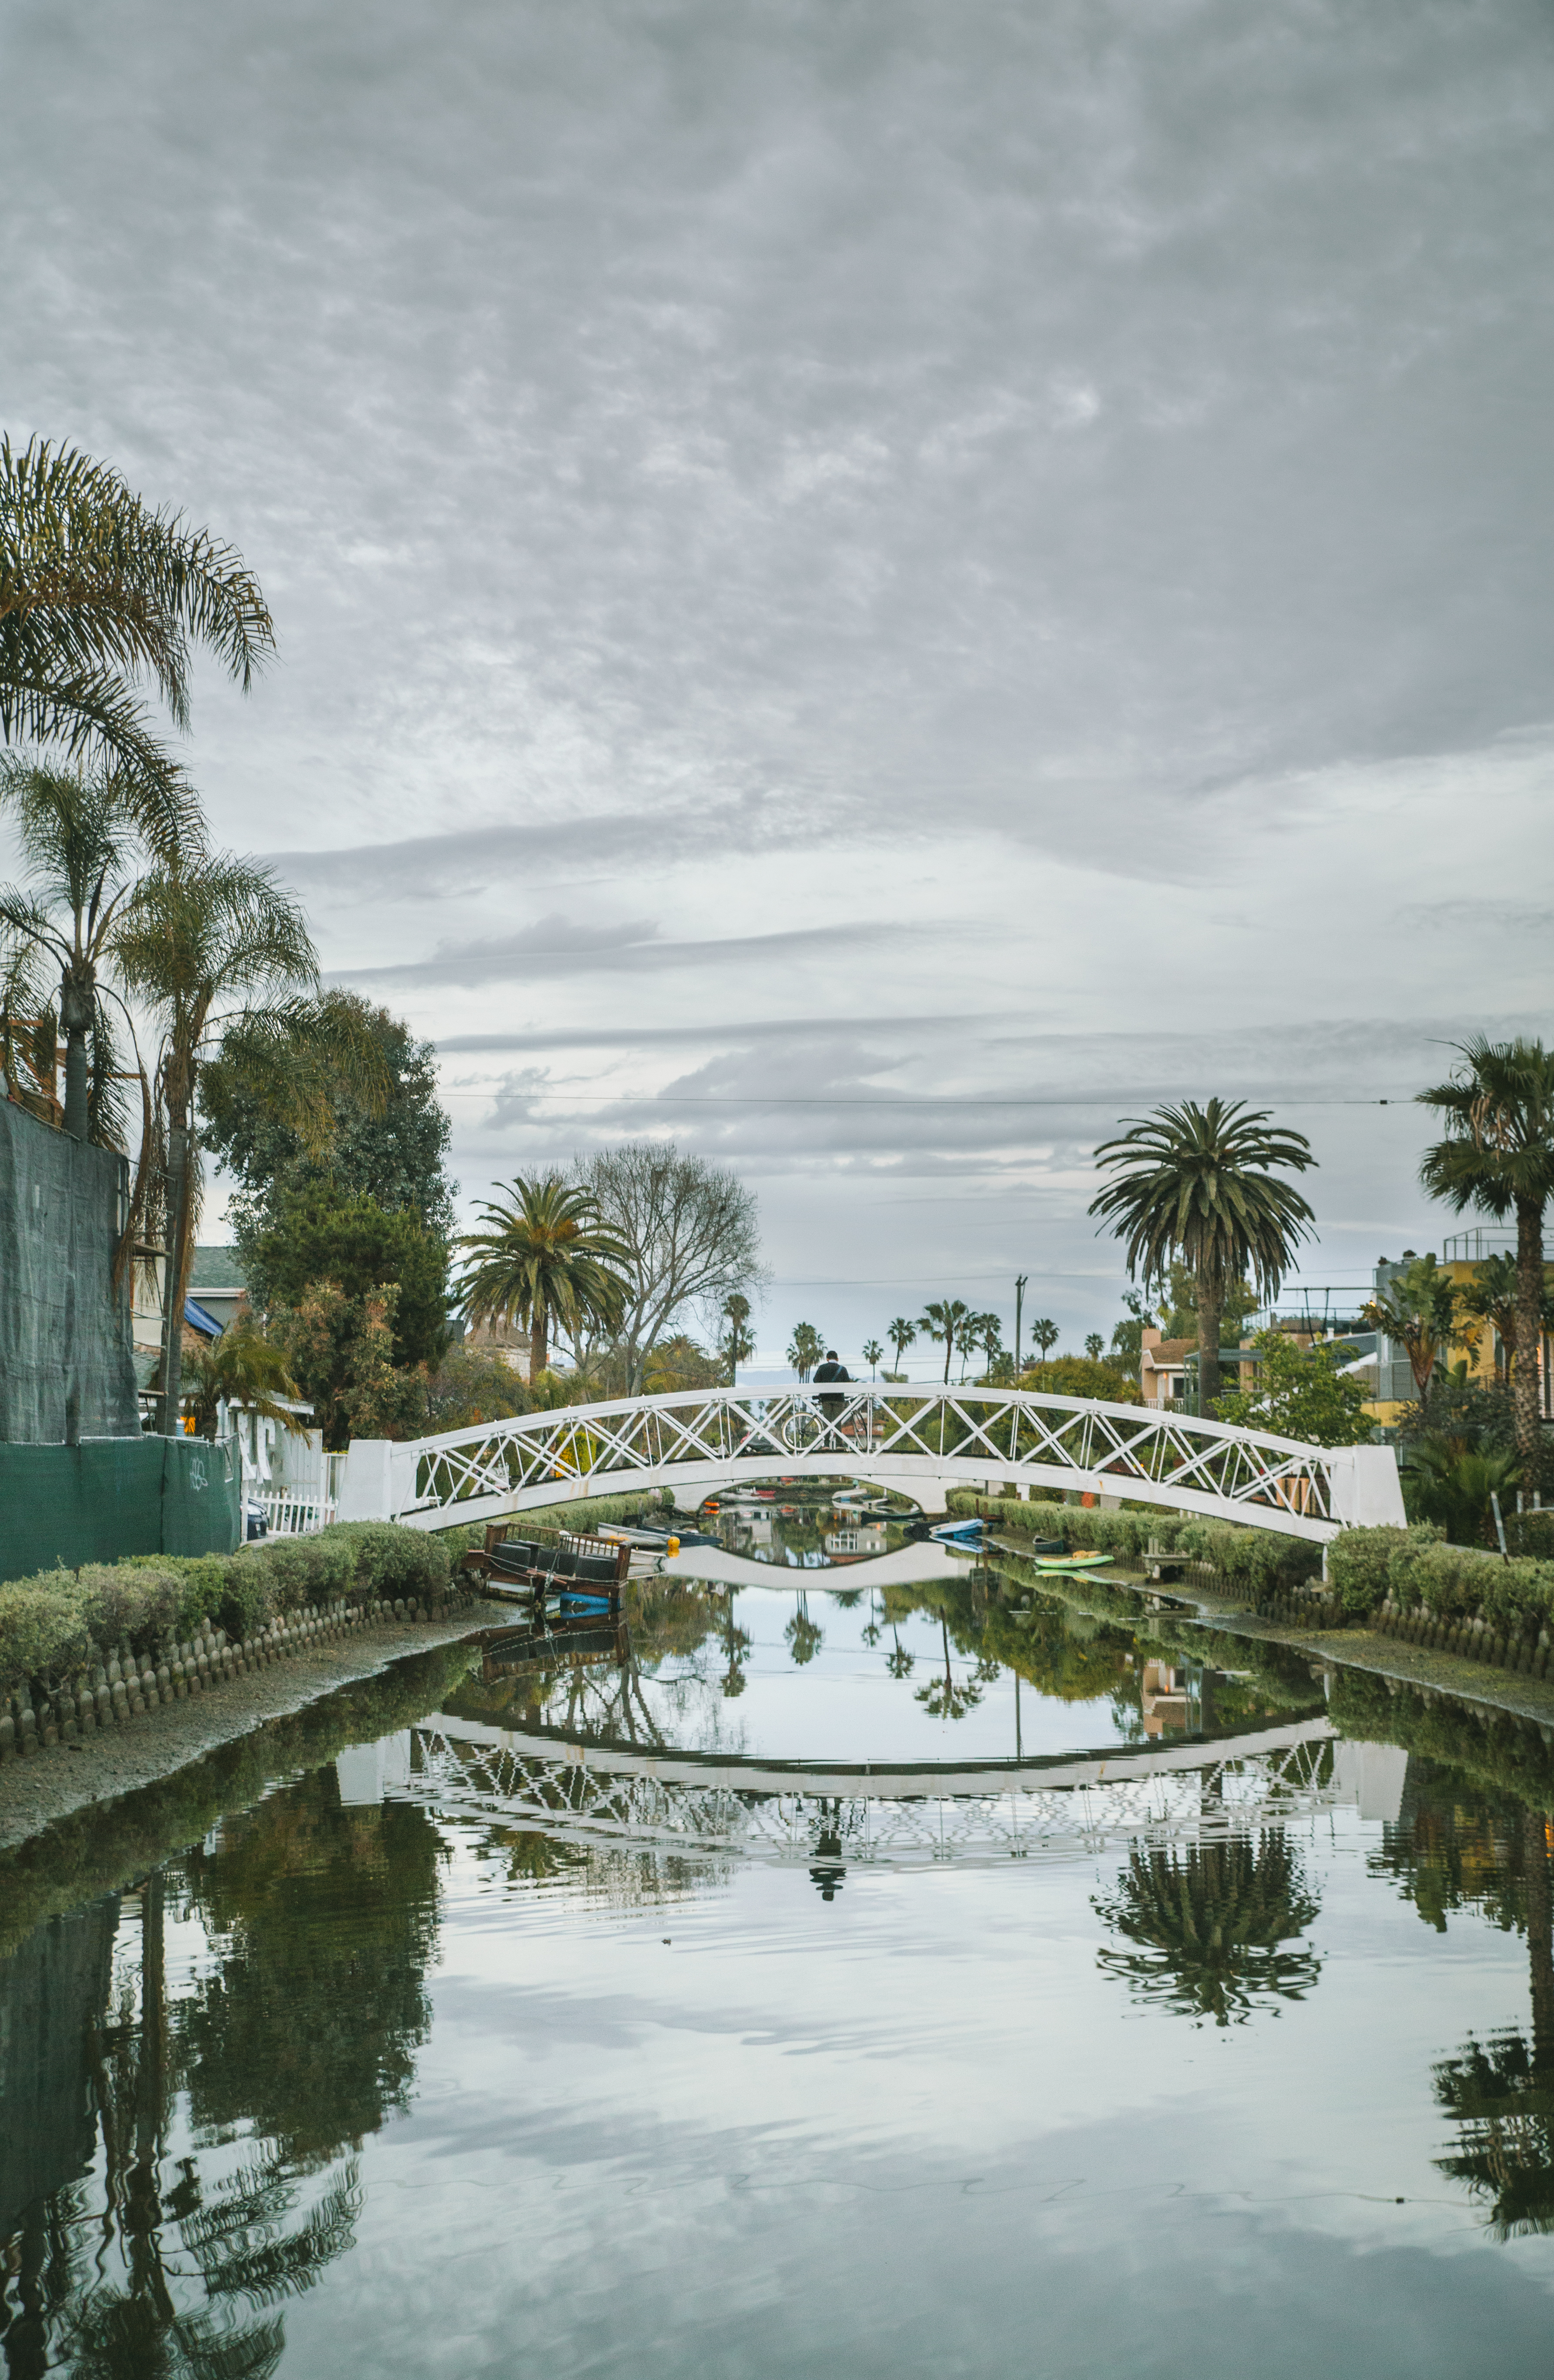 Mégane Arderighi - Canal Venice Beach Los Angeles 